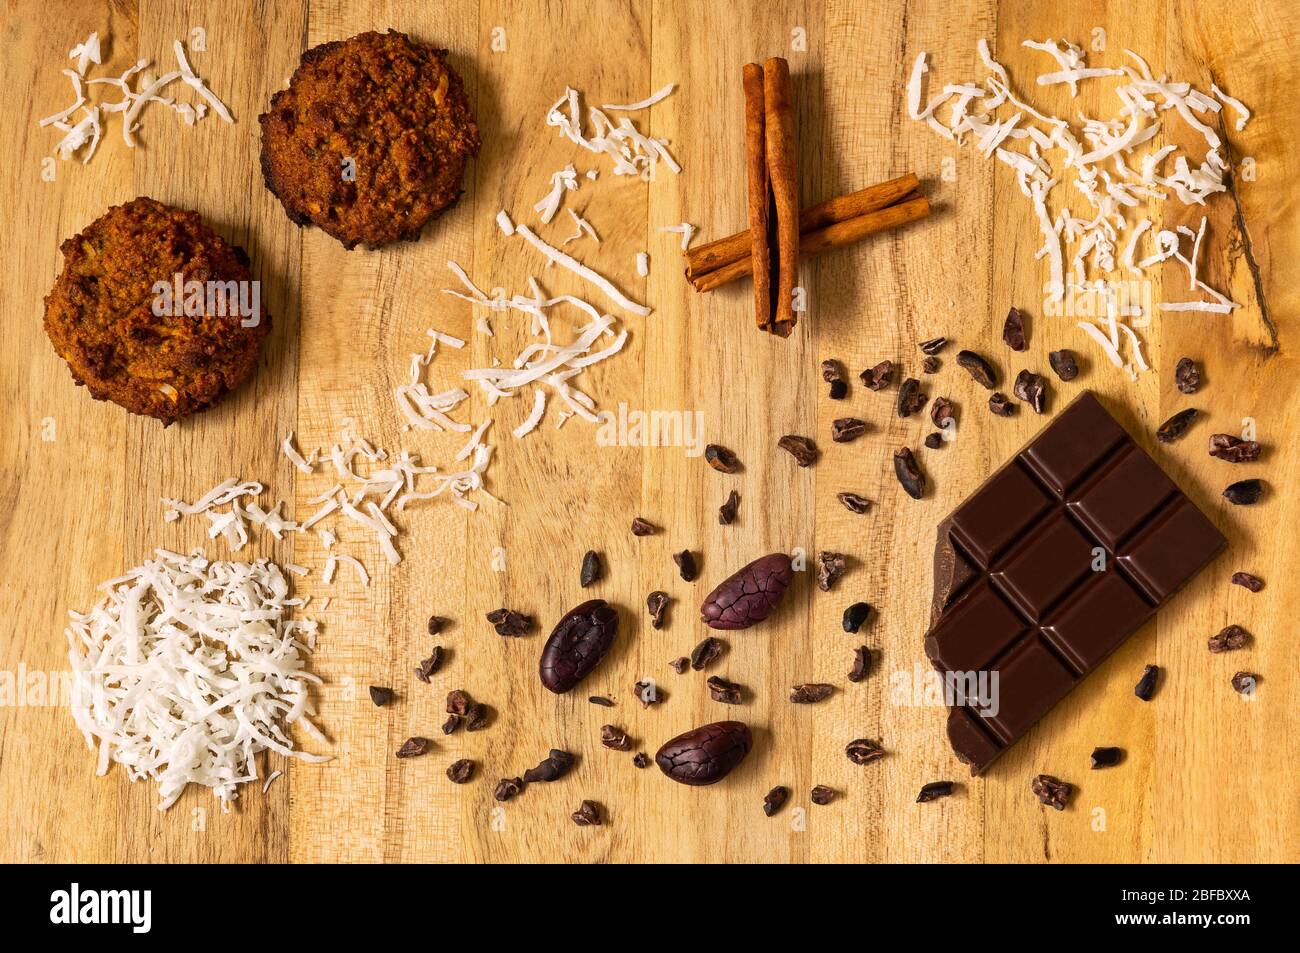 Vous apprenez à cuisiner dans le verrouillage de quarantaine Corona ? Biscuits de noix de coco avec chocolat équatorien noir d'origine unique et une touche de cannelle. Banque D'Images